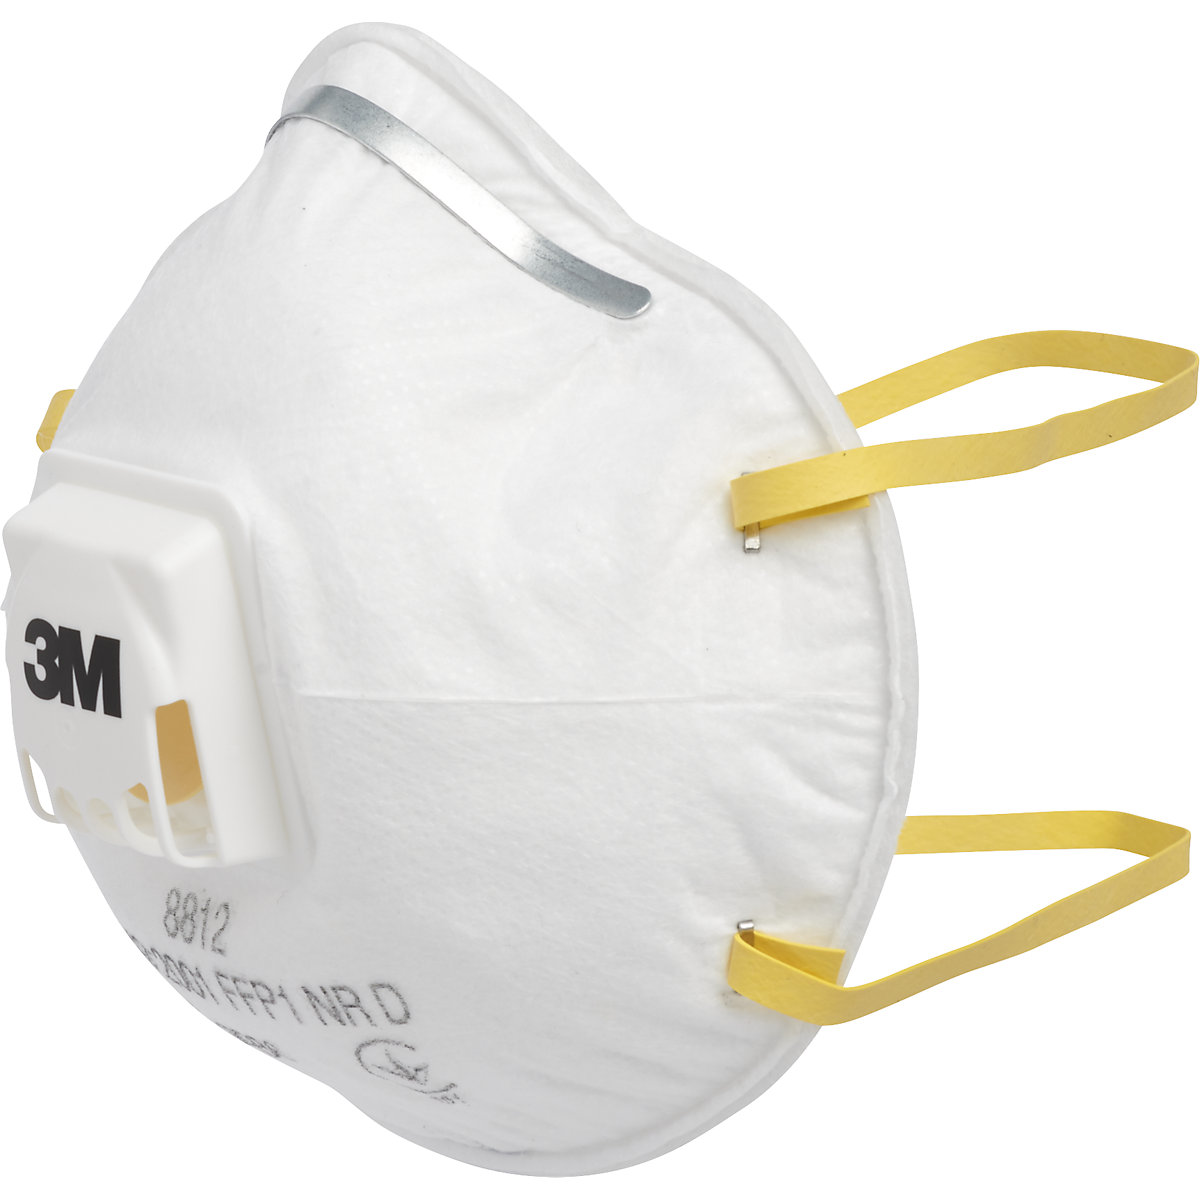 Masque de protection respiratoire 8812 FFP1 NR D avec clapet d'expiration – 3M